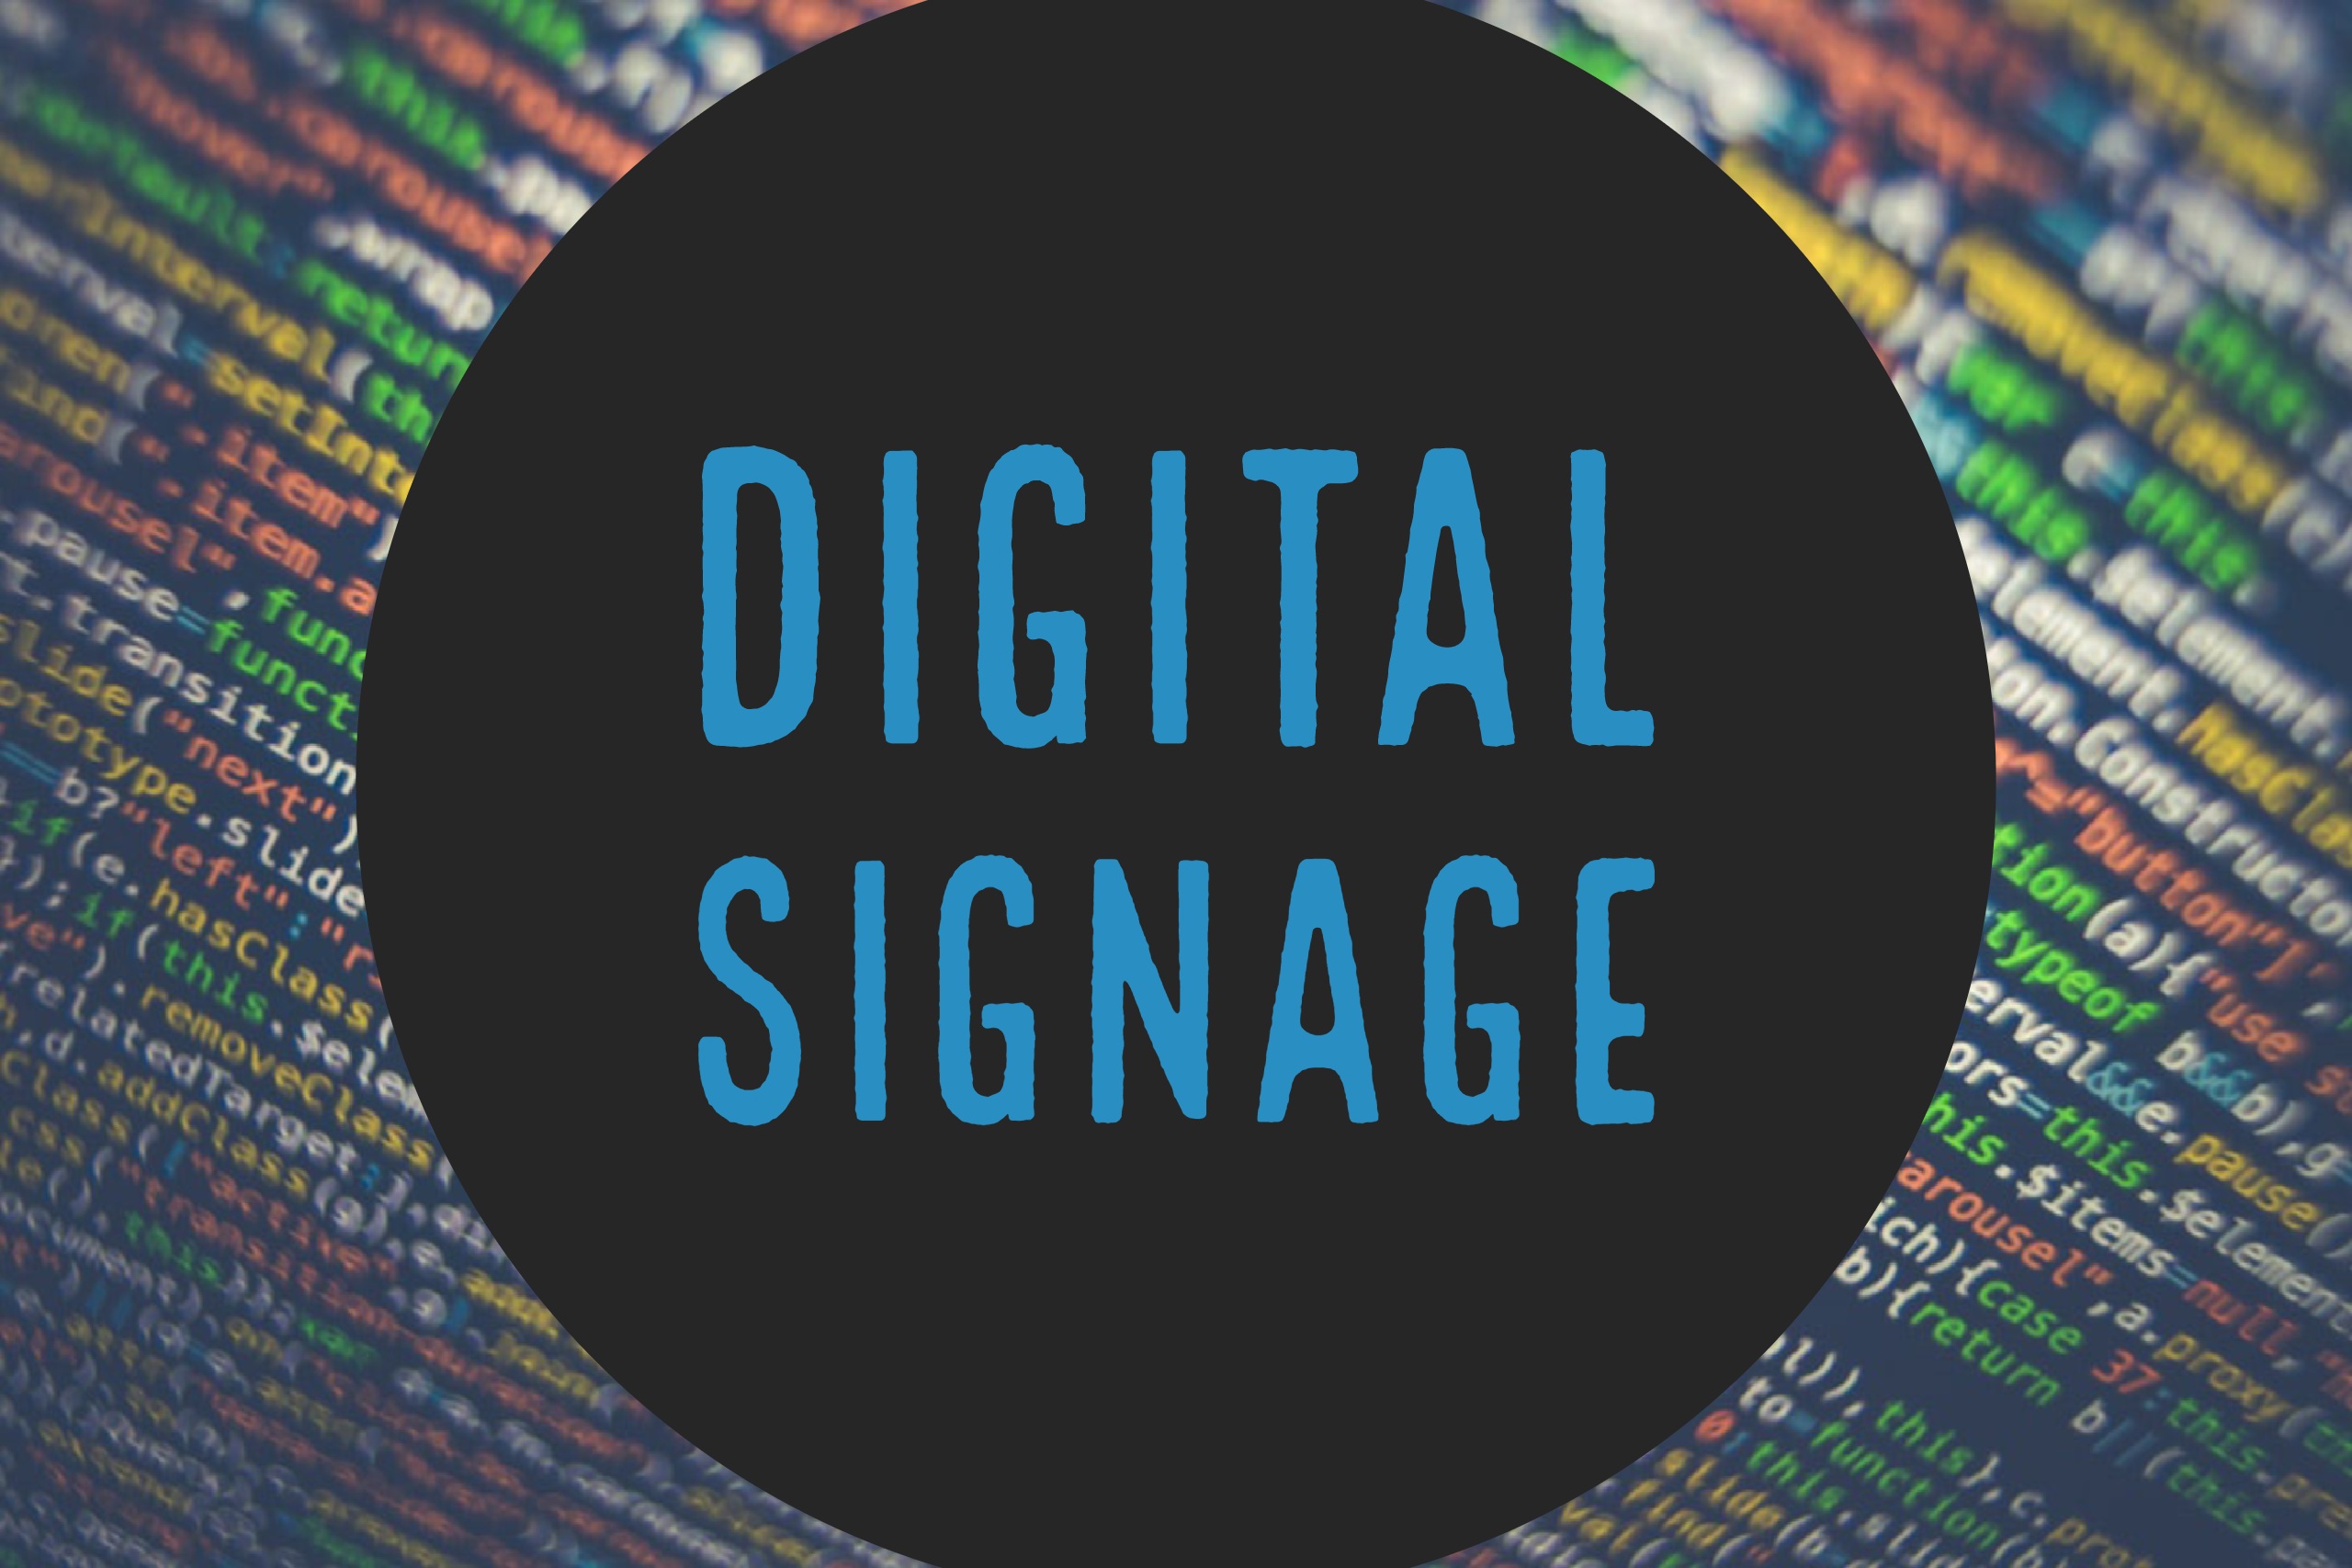 digital signage text over lights